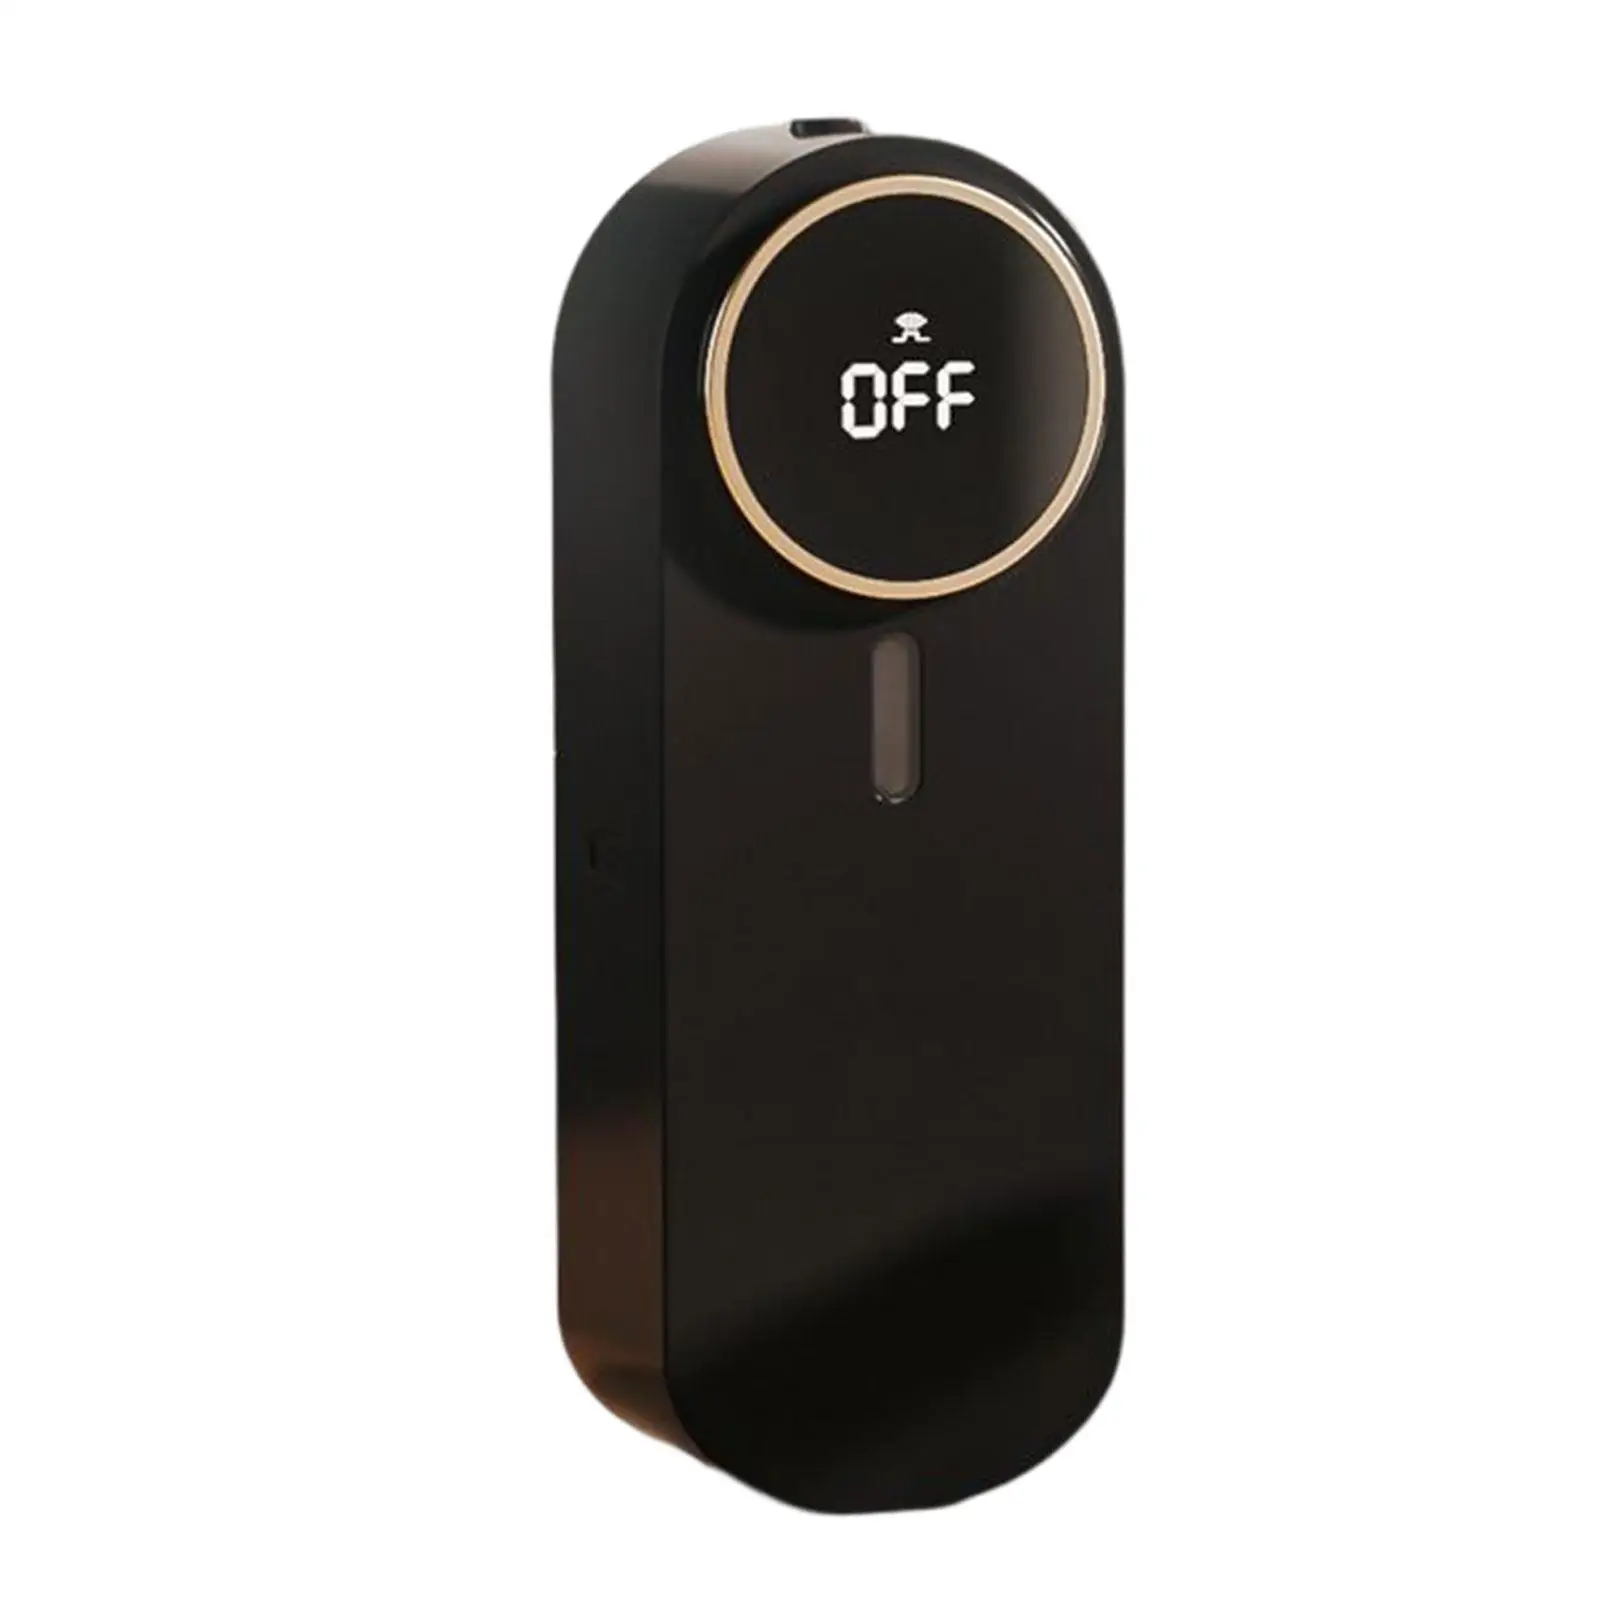 Fragrance Diffuser Scent Dispenser 5 Speed Adjustable for Bedroom Office